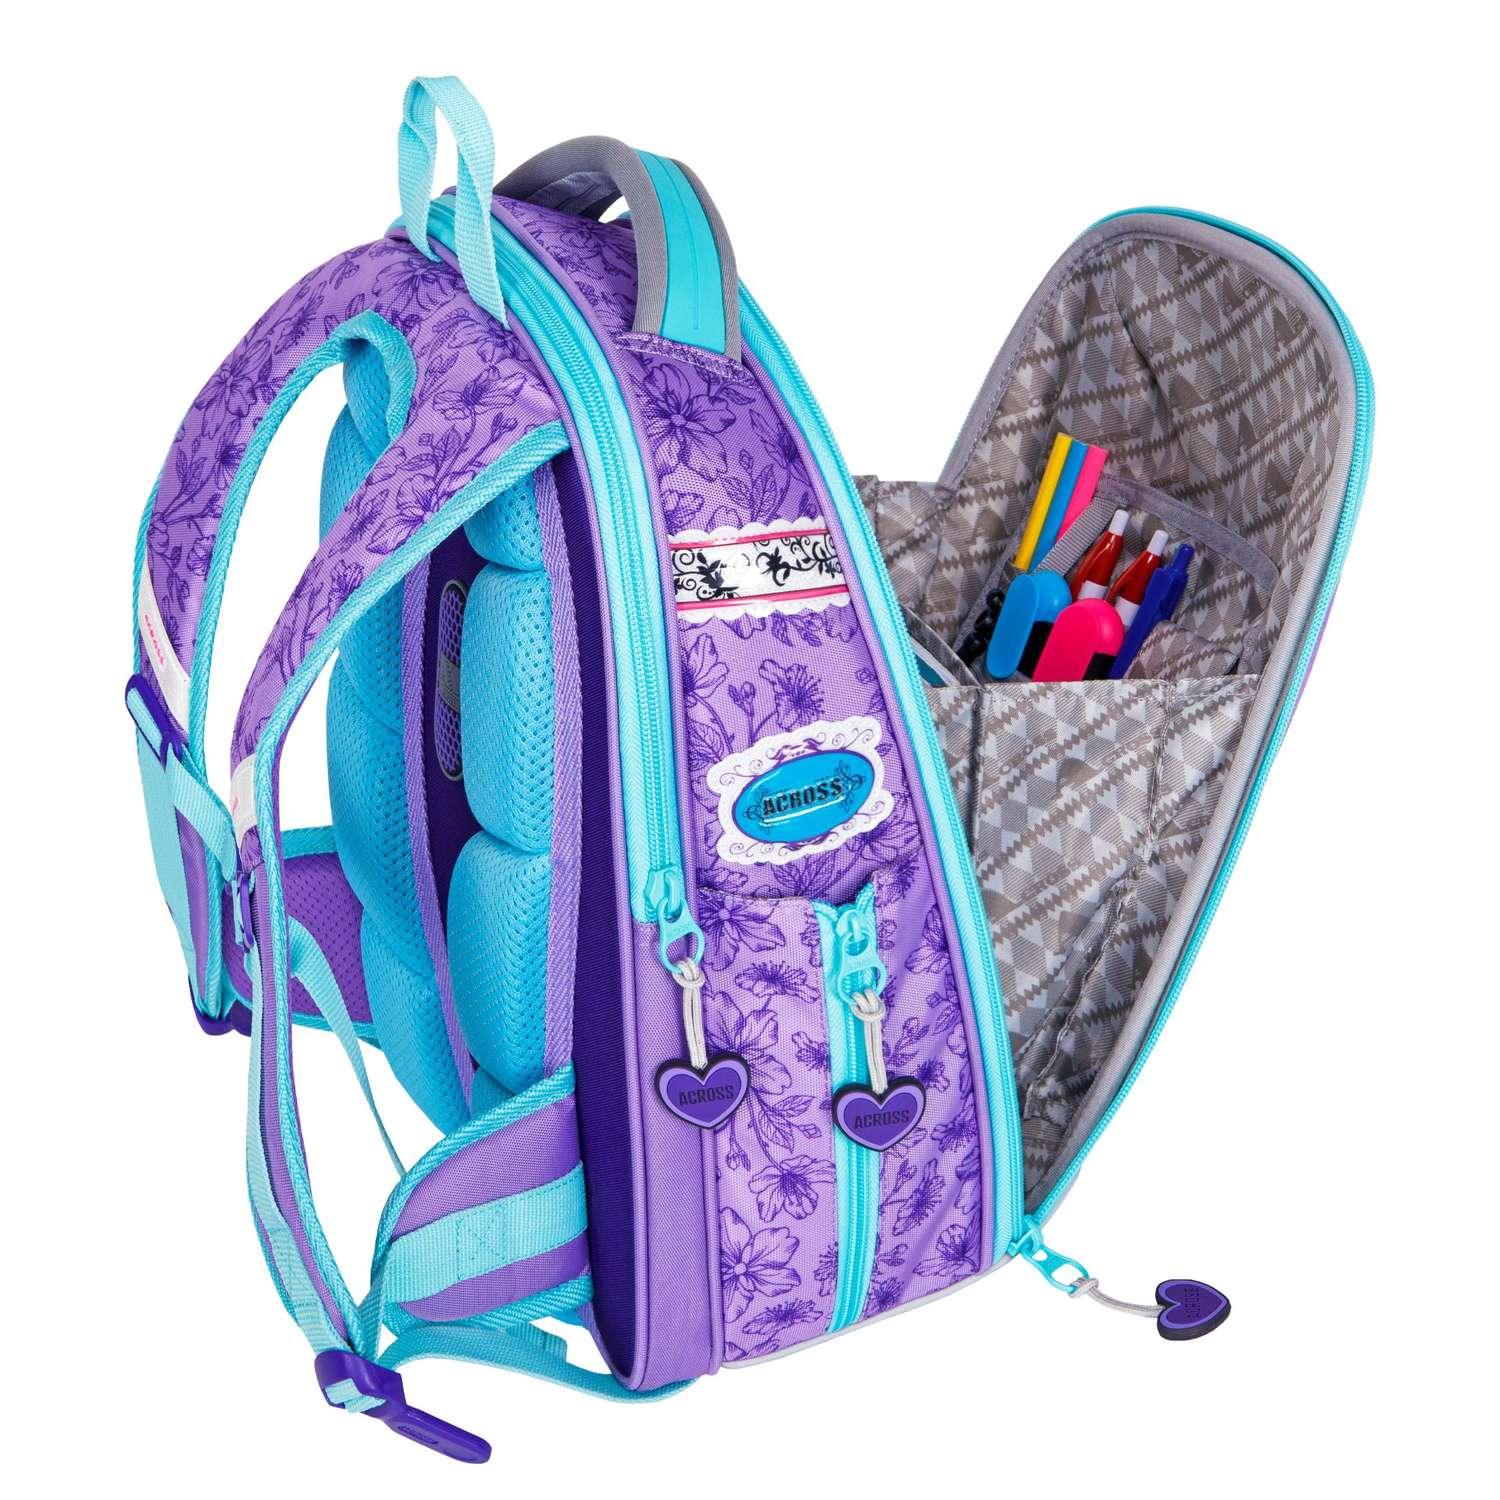 Рюкзак школьный ACROSS с наполнением: мешок для обуви пенал папка и брелок - фото 6